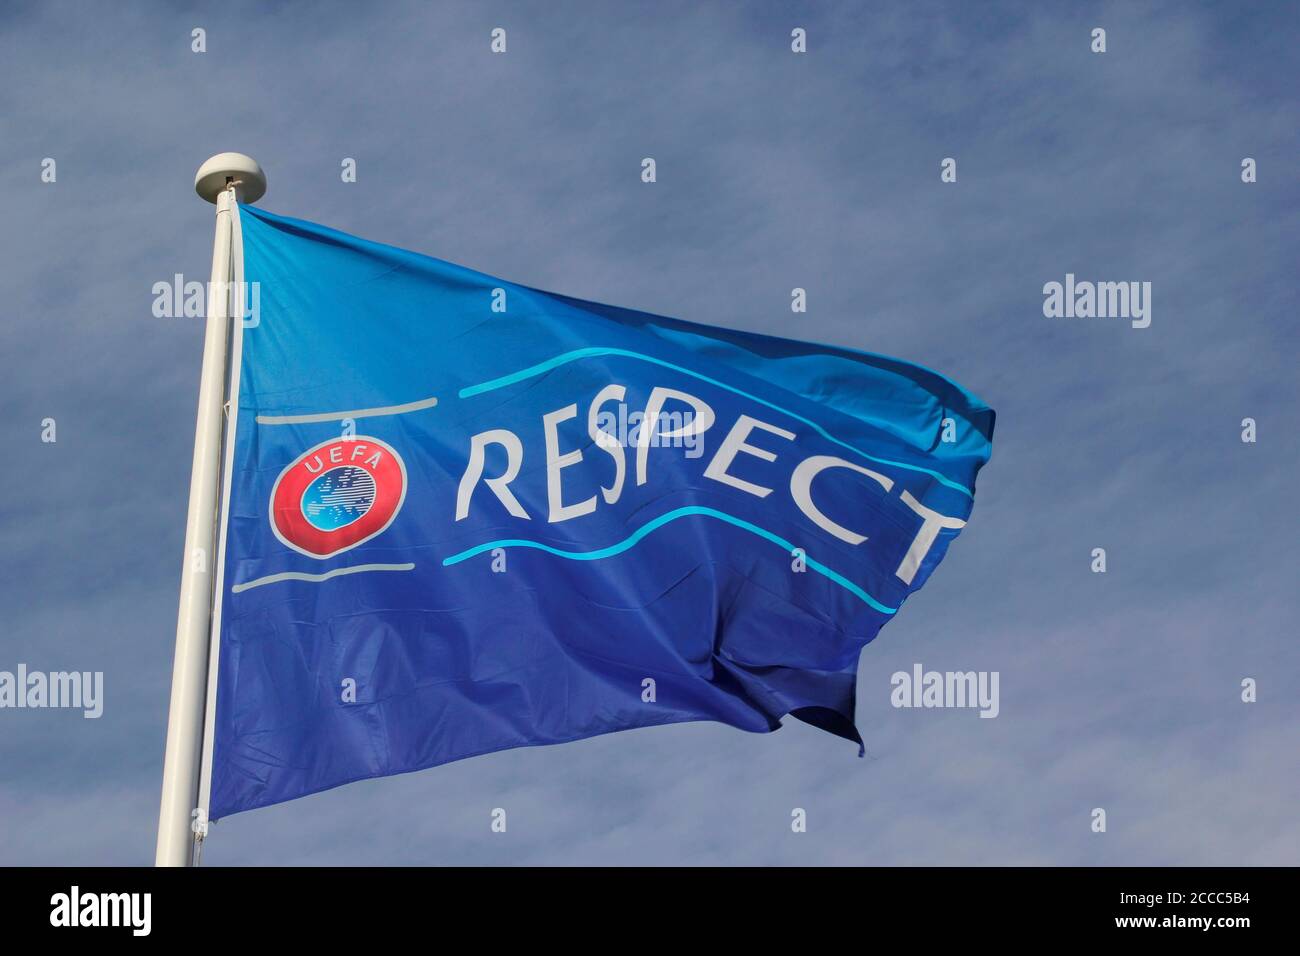 L'UEFA respecte la campagne contre le racisme et promeut le travail en faveur de l'unité et du respect à travers le genre, la race, la religion et la capacité photo de Tony Henshaw Banque D'Images